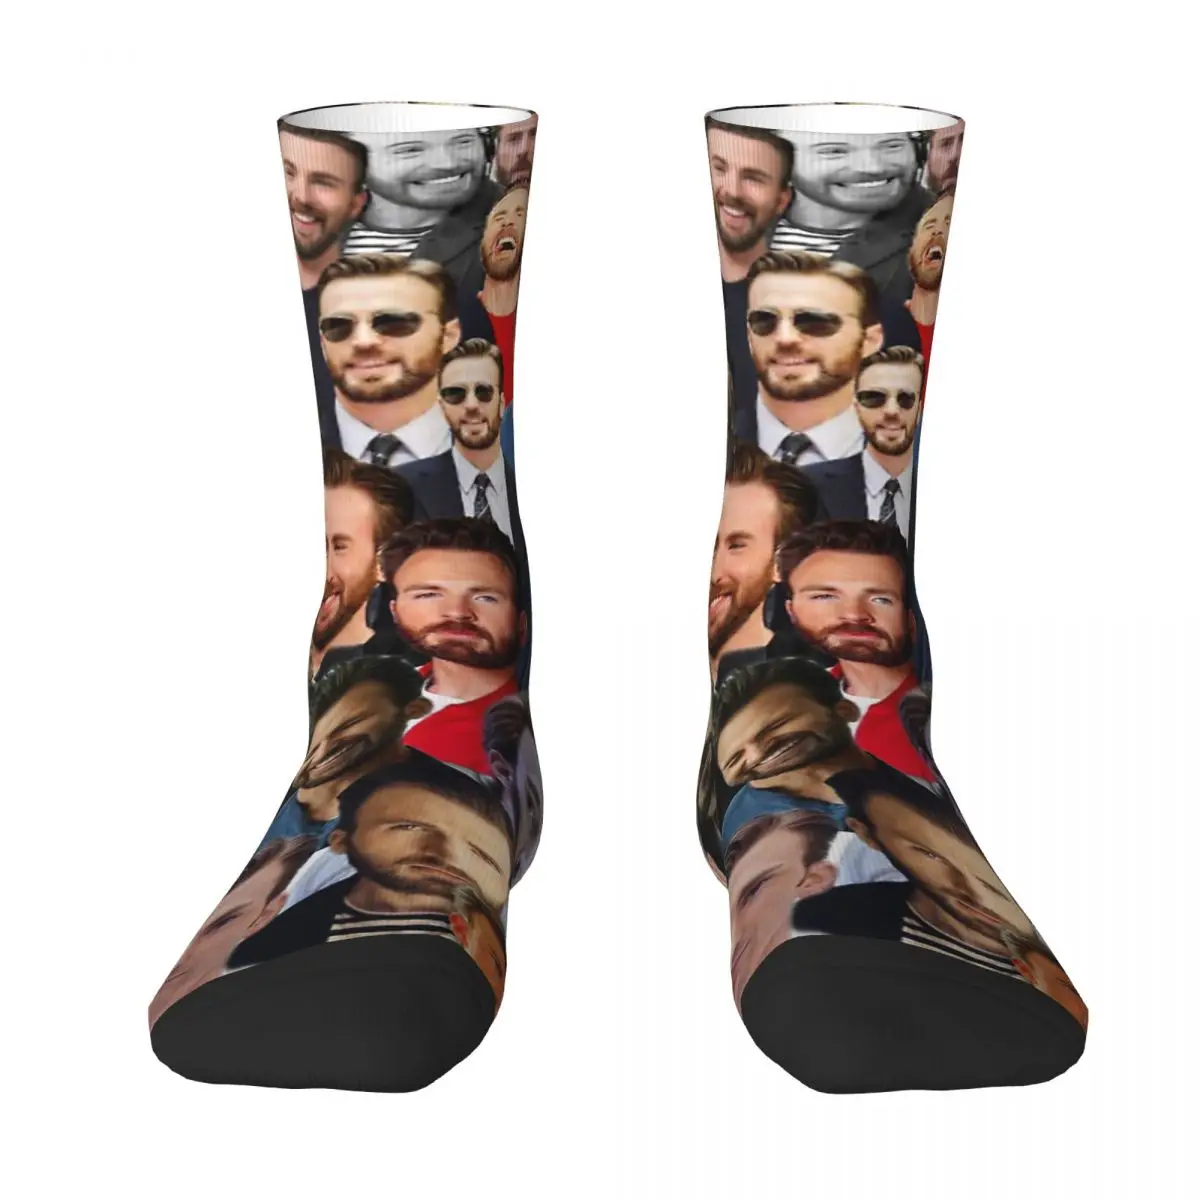 Chris Evans Adult Socks Unisex socks,men Socks women Socks